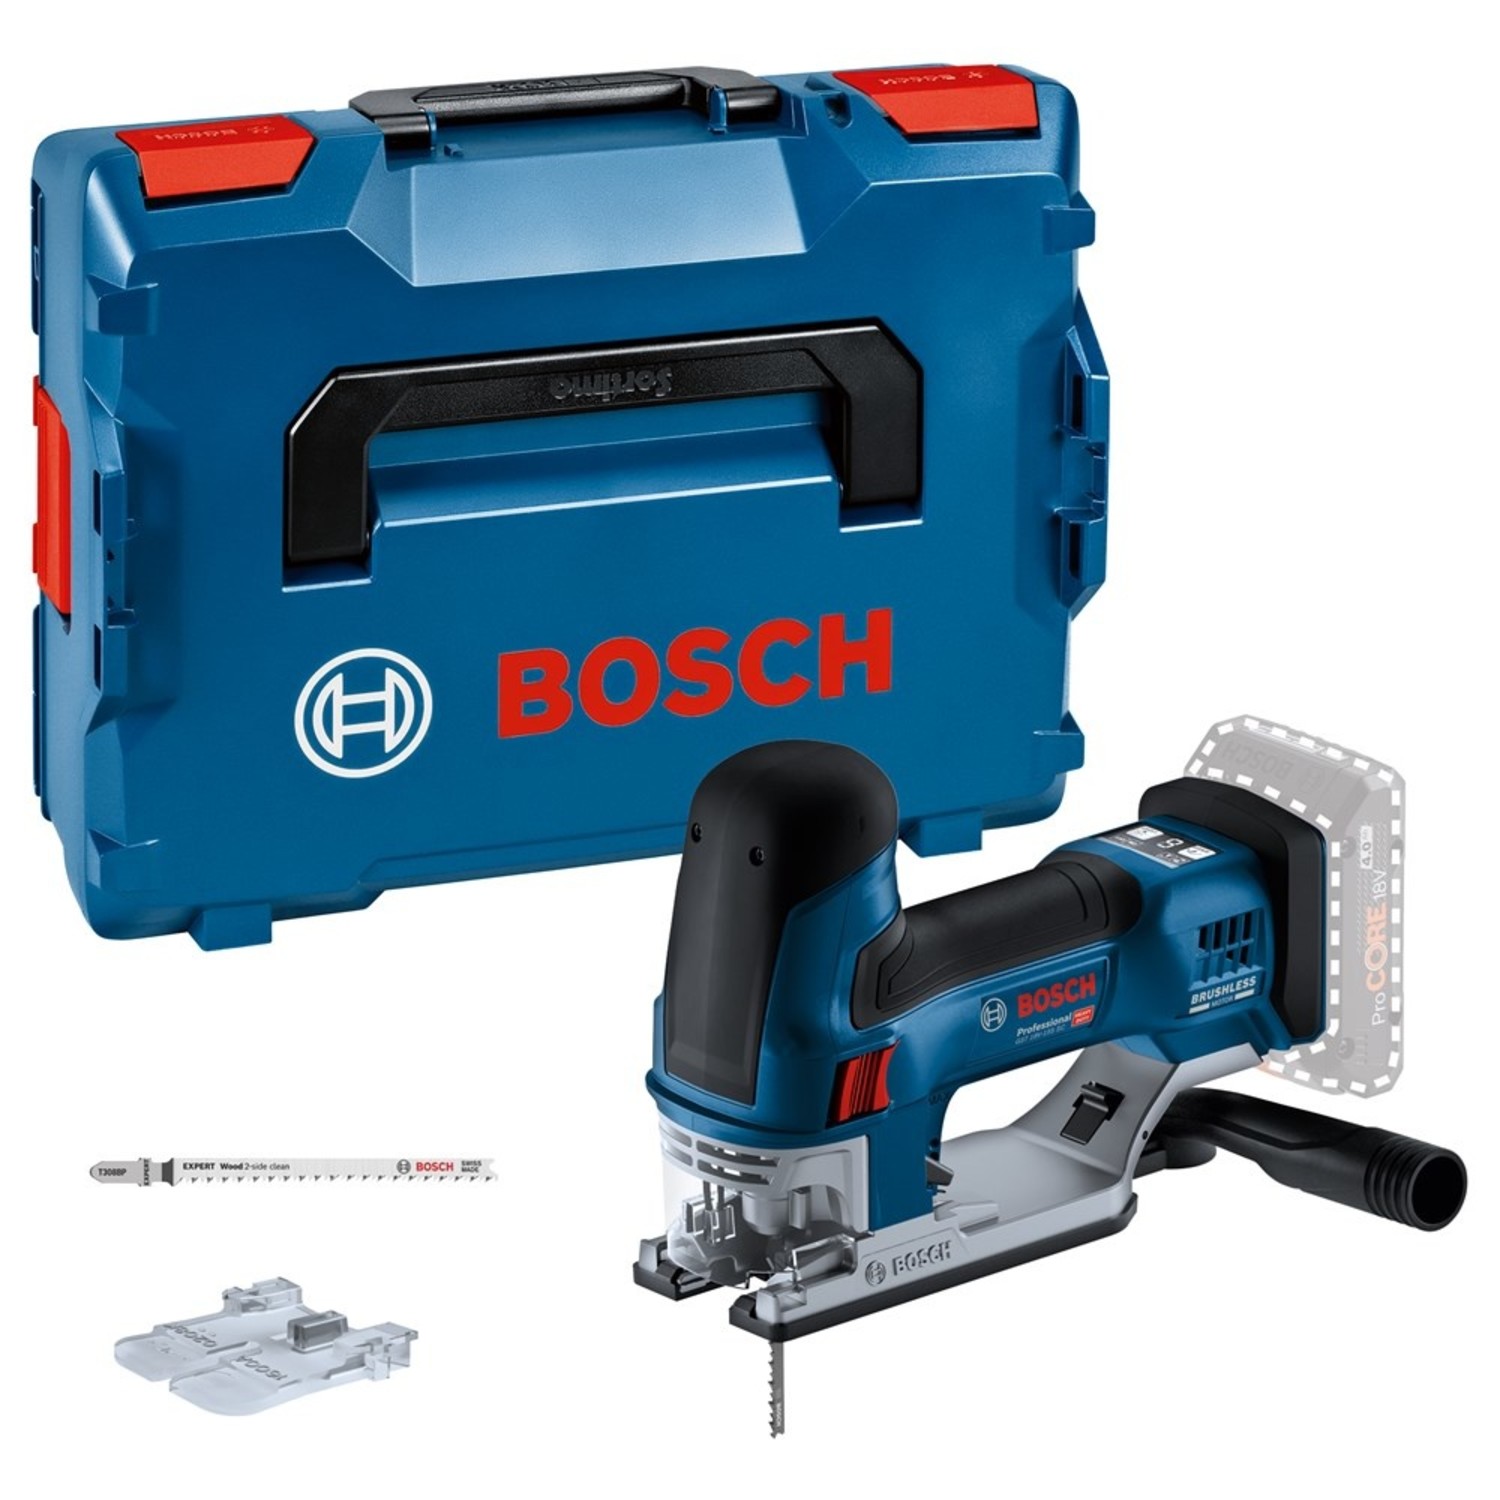 wiel Ligatie Op het randje Bosch GST 18B-155 SC Accu decoupeerzaag in L-Boxx - 06015B0000 kopen? |  Toolsvoordelig.nl - Toolsvoordelig.nl